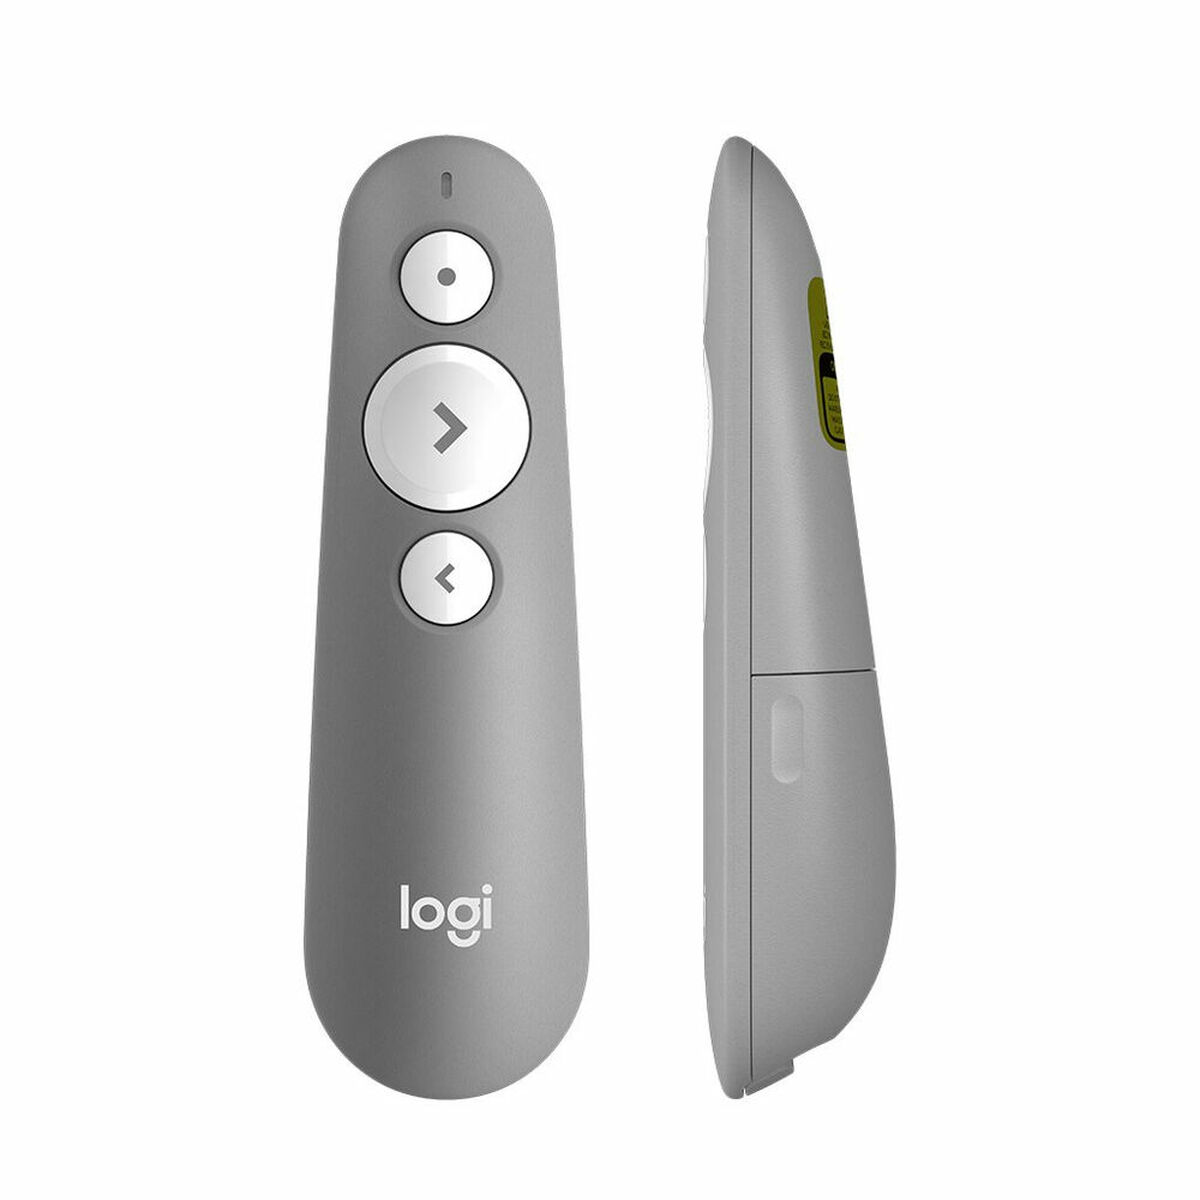 Telecomando Logitech R500 Laser Presentation Remote